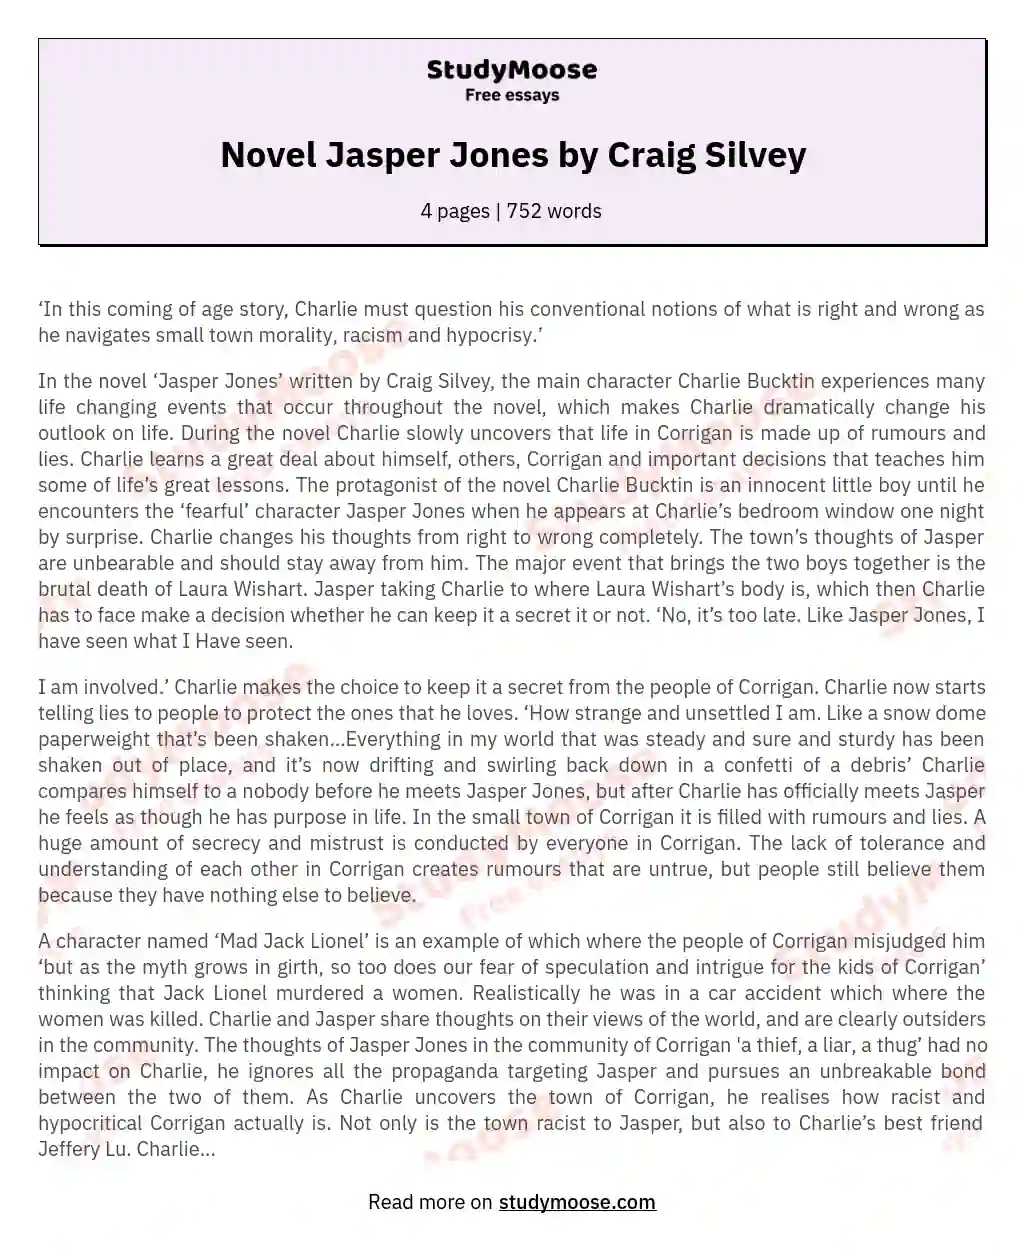 Novel Jasper Jones by Craig Silvey